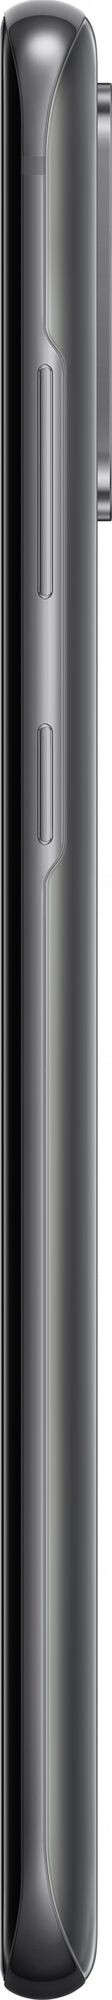 Смартфон Samsung Galaxy S20 Plus (SM-G986B) 5G 12/128GB Cosmic Gray (Серый)